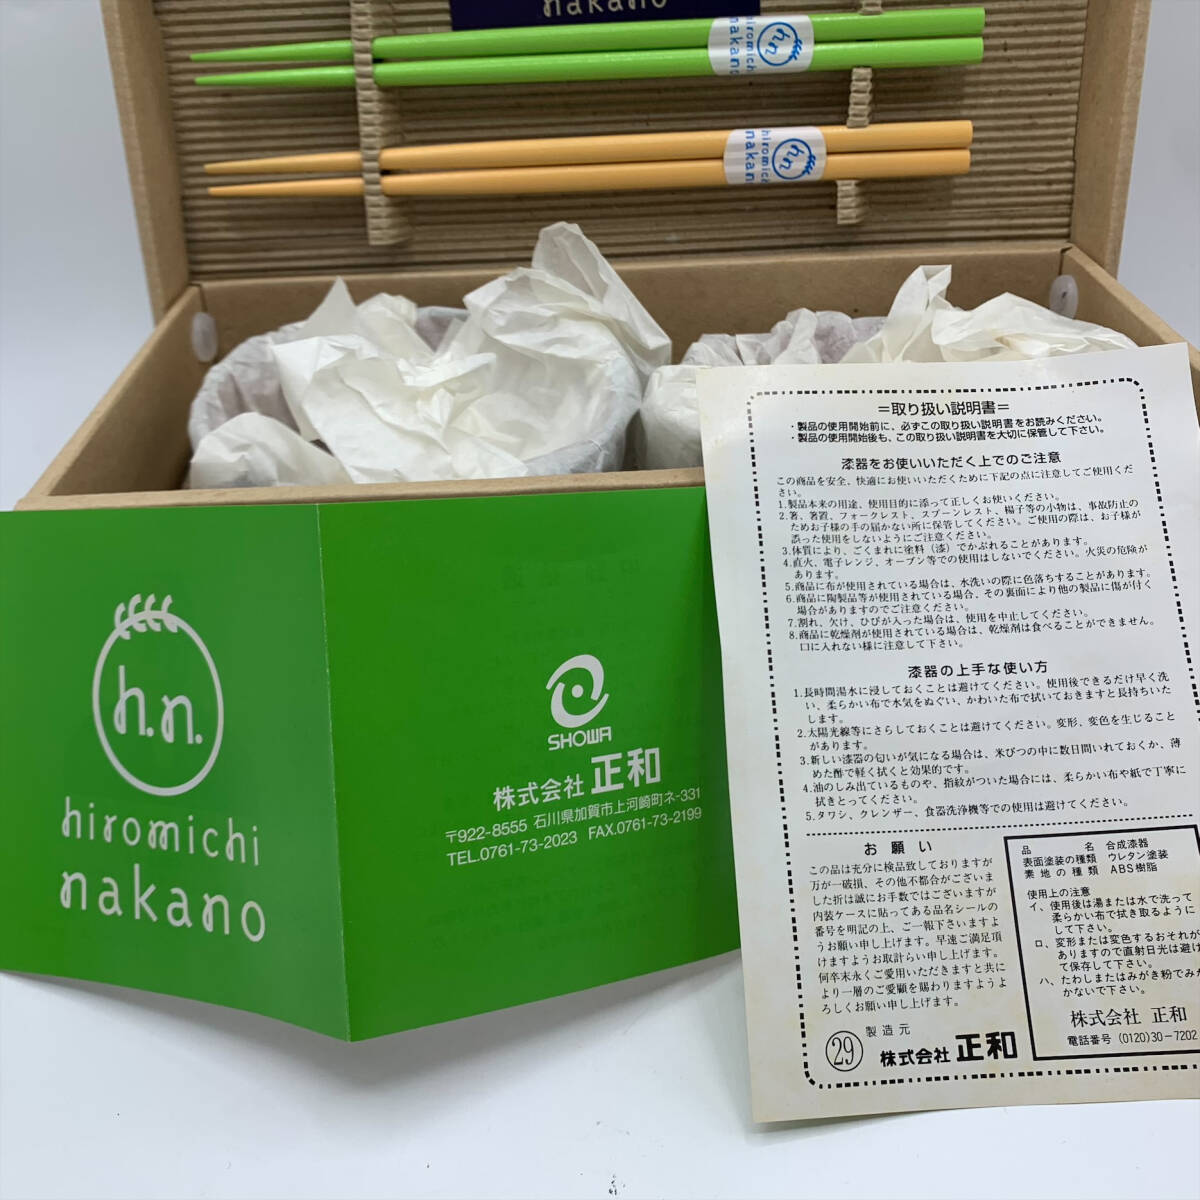 #13311 【未使用】hiromichi nakano 汁椀ペア キンポウゲ 椀と箸のセット 2ペア ヒロミチ・ナカノ 中野裕通 食器 茶碗 和食器の画像2